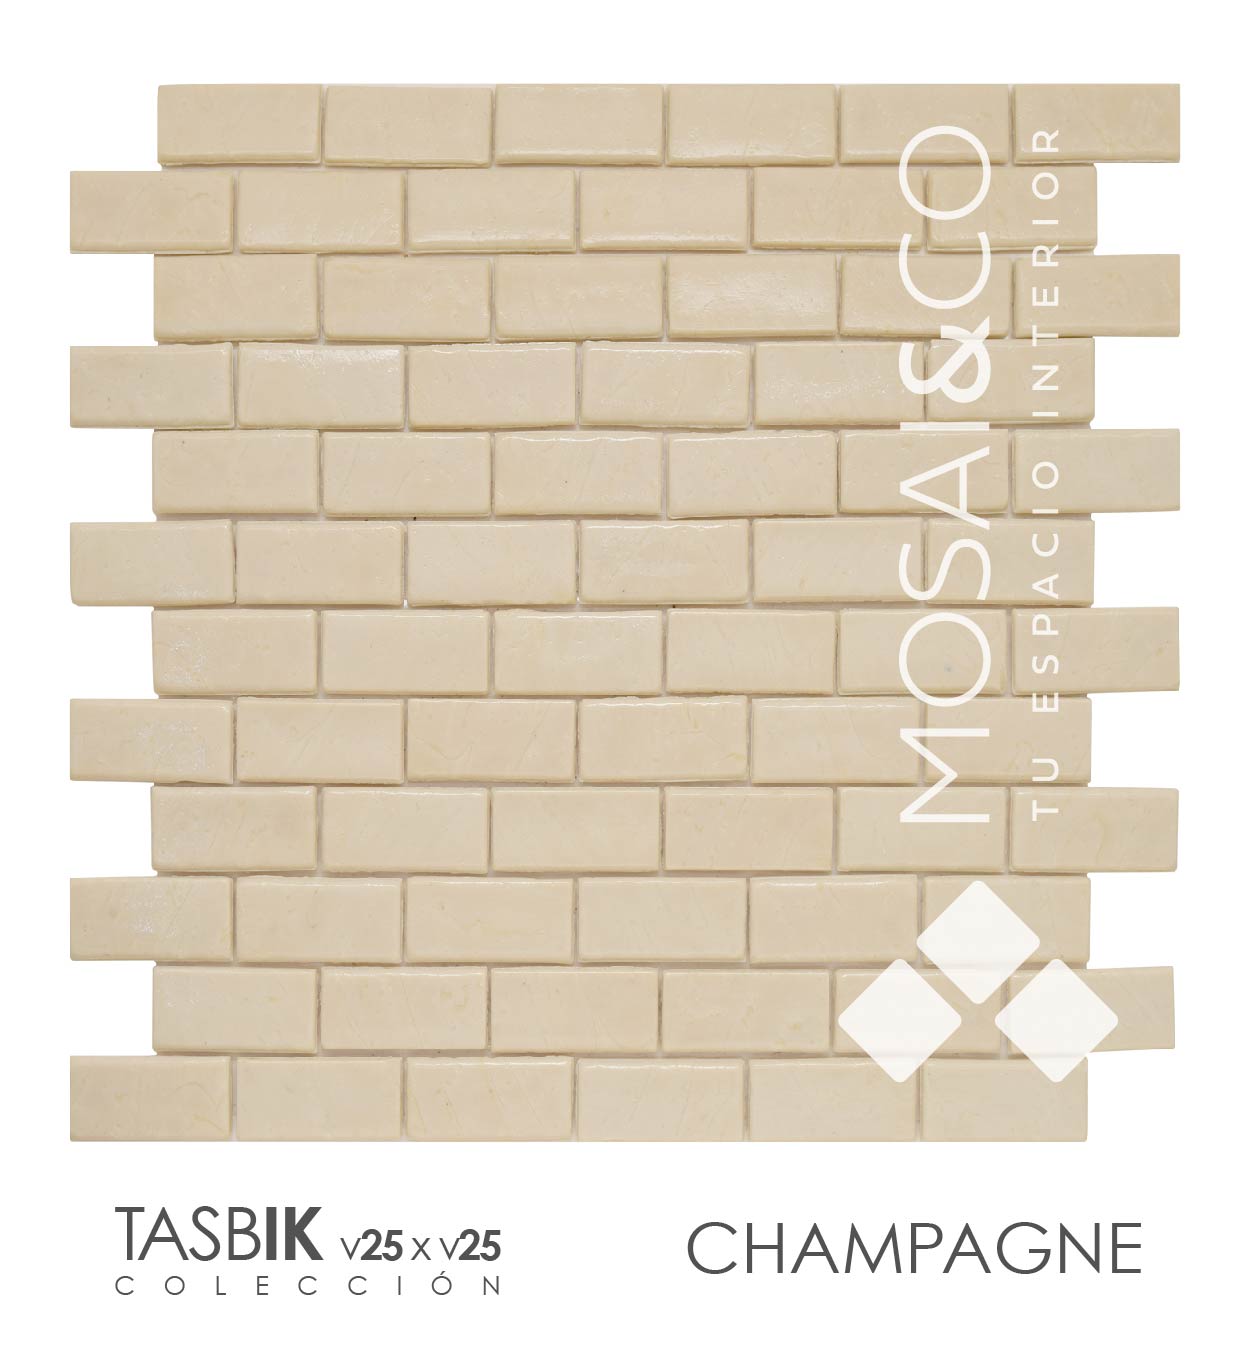 mosaico-decoracion-interiores-mosaiandco-coleccion-tasbik-v25-v50_champagne